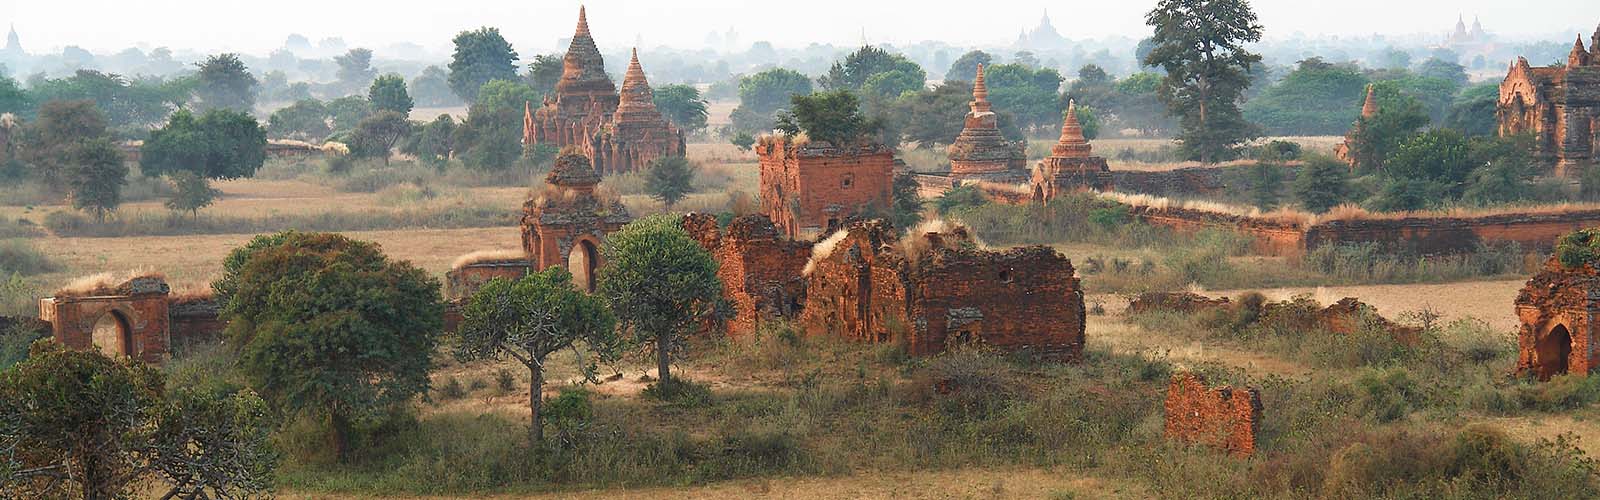 Cultura e tradizioni del Birmania